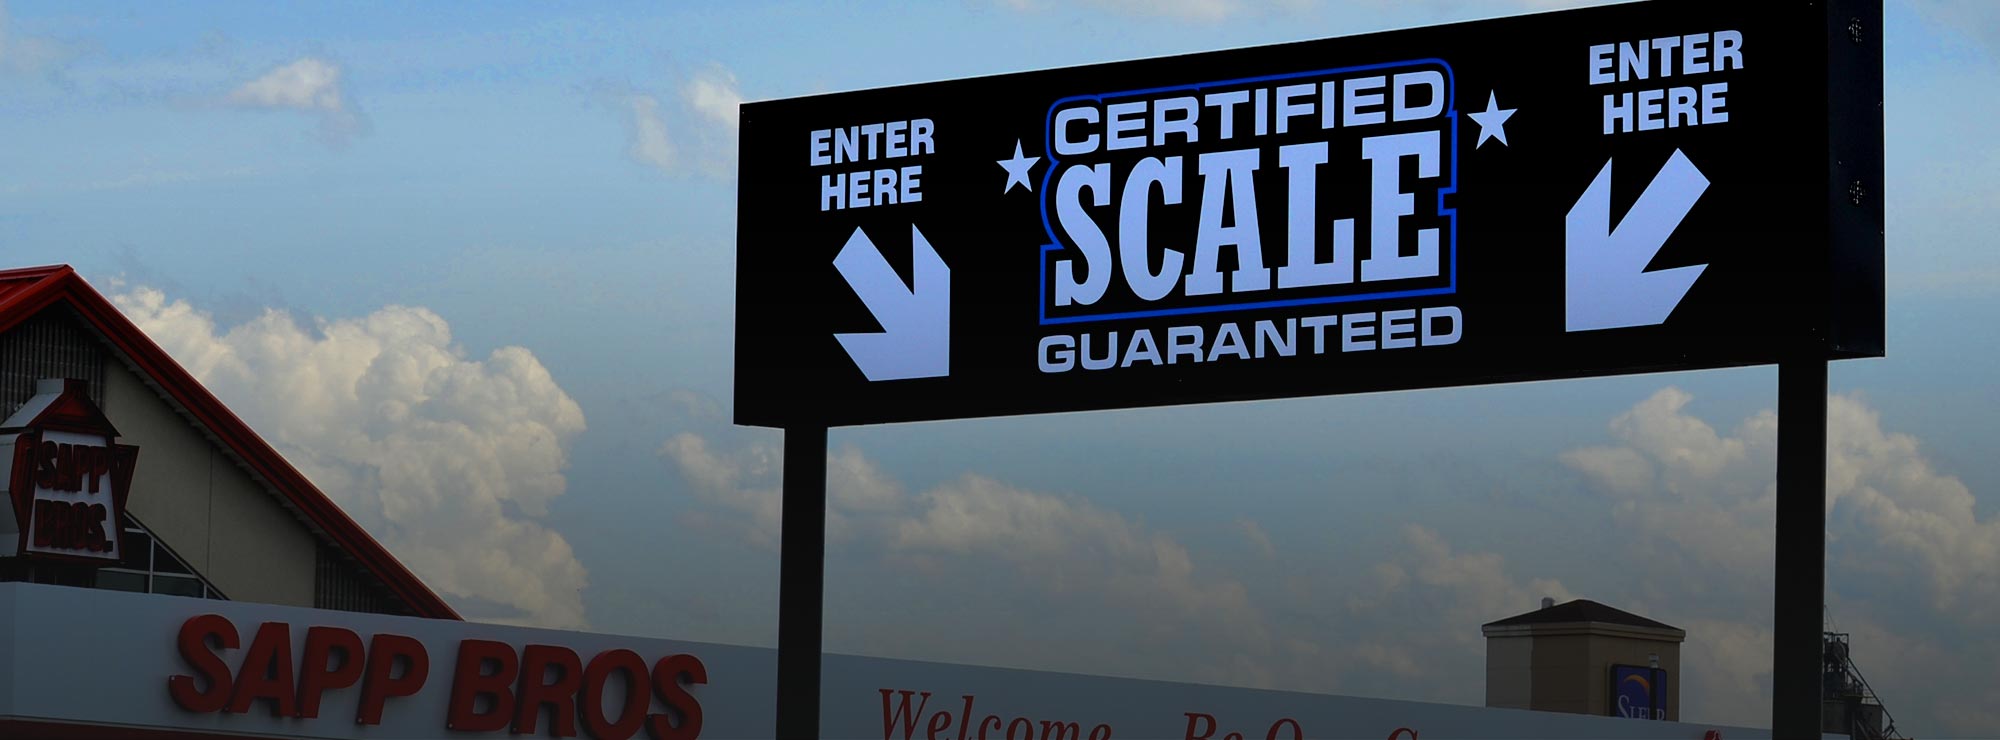 Sapp Bros. scales signage